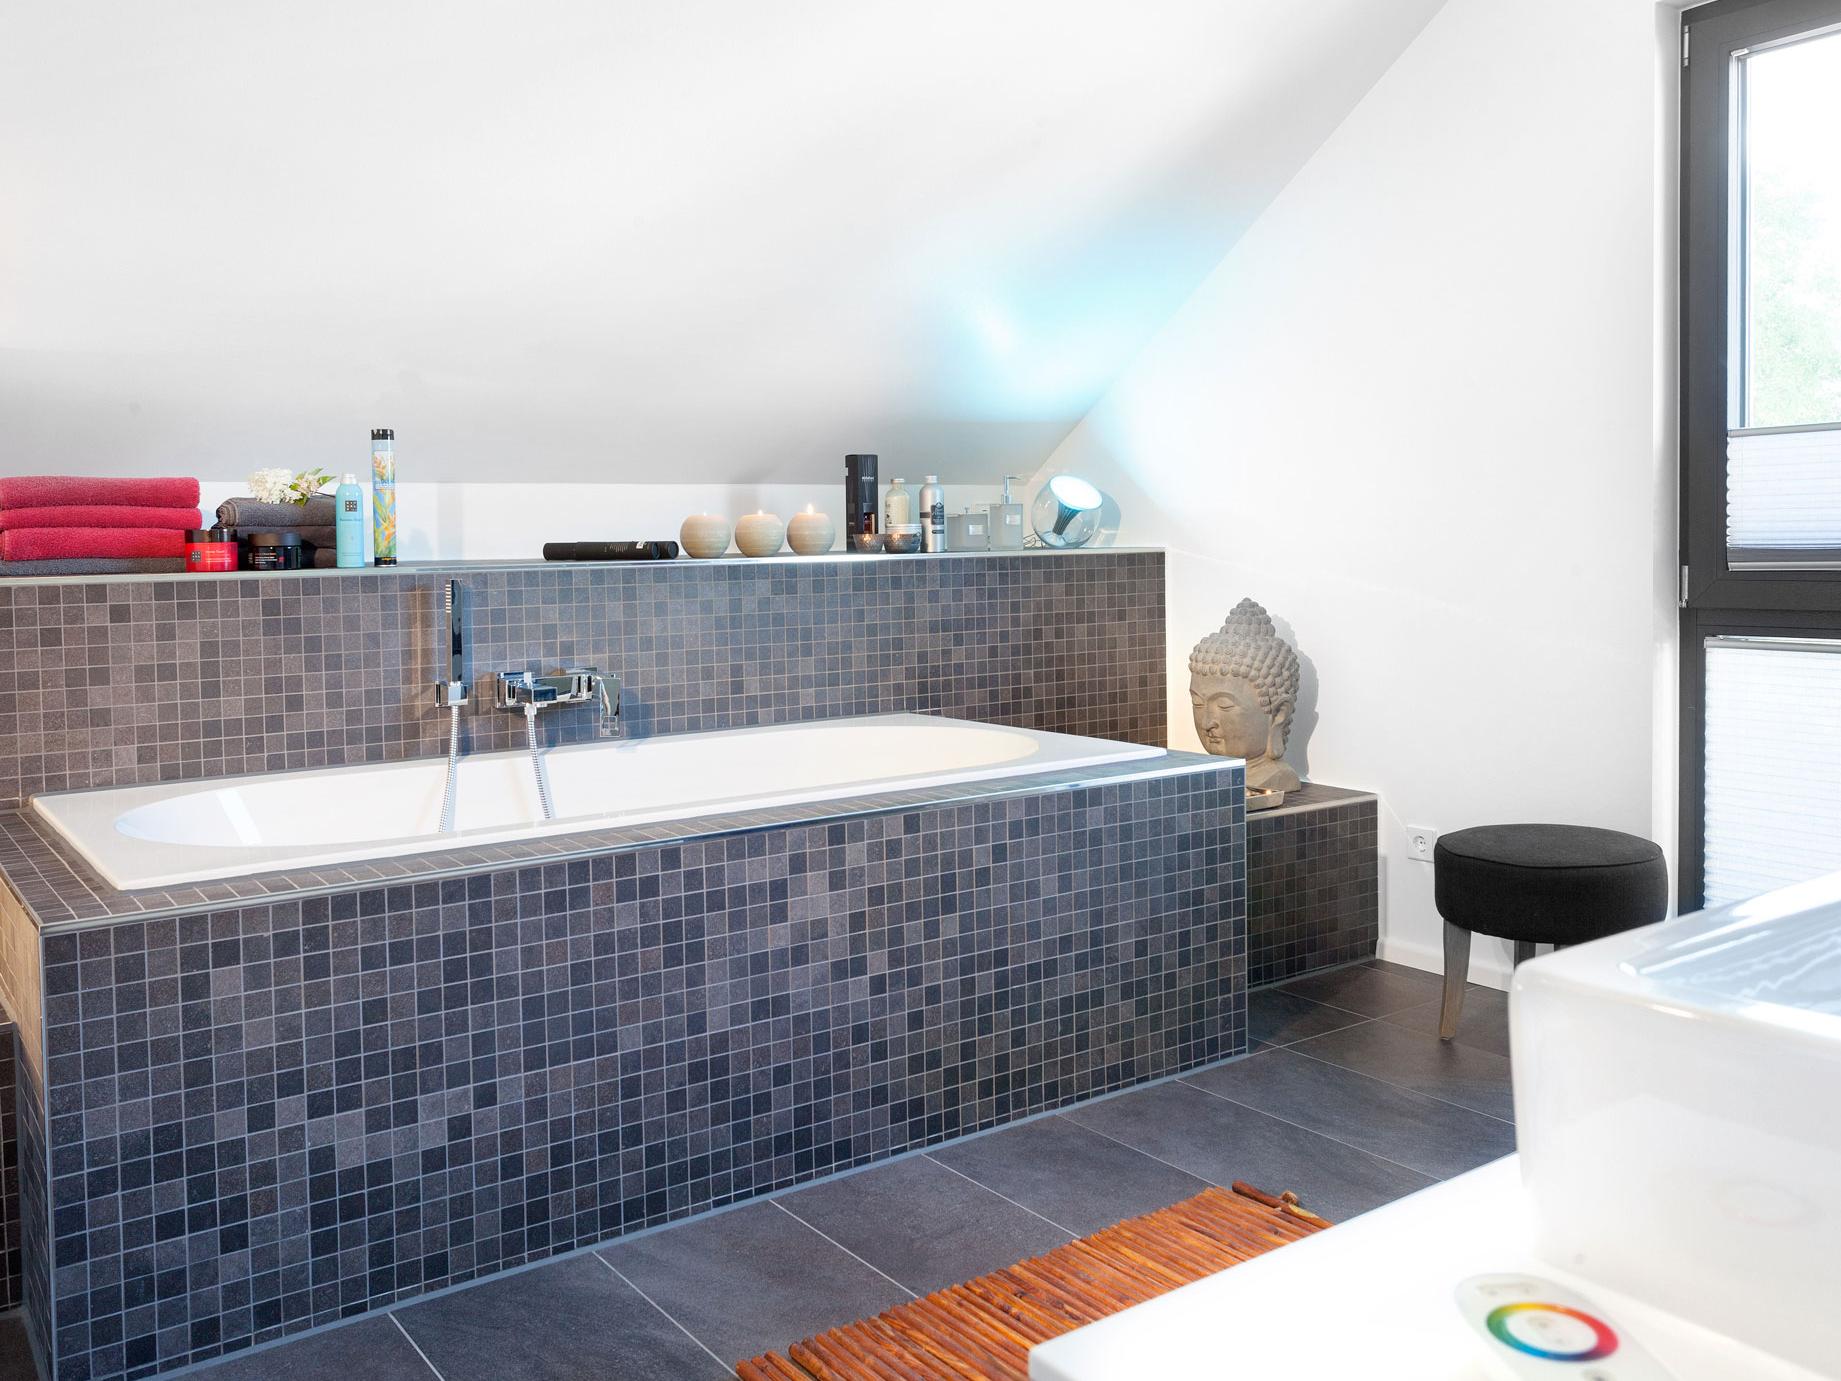 Salle de bain moderne au look subtil de Mosaiq